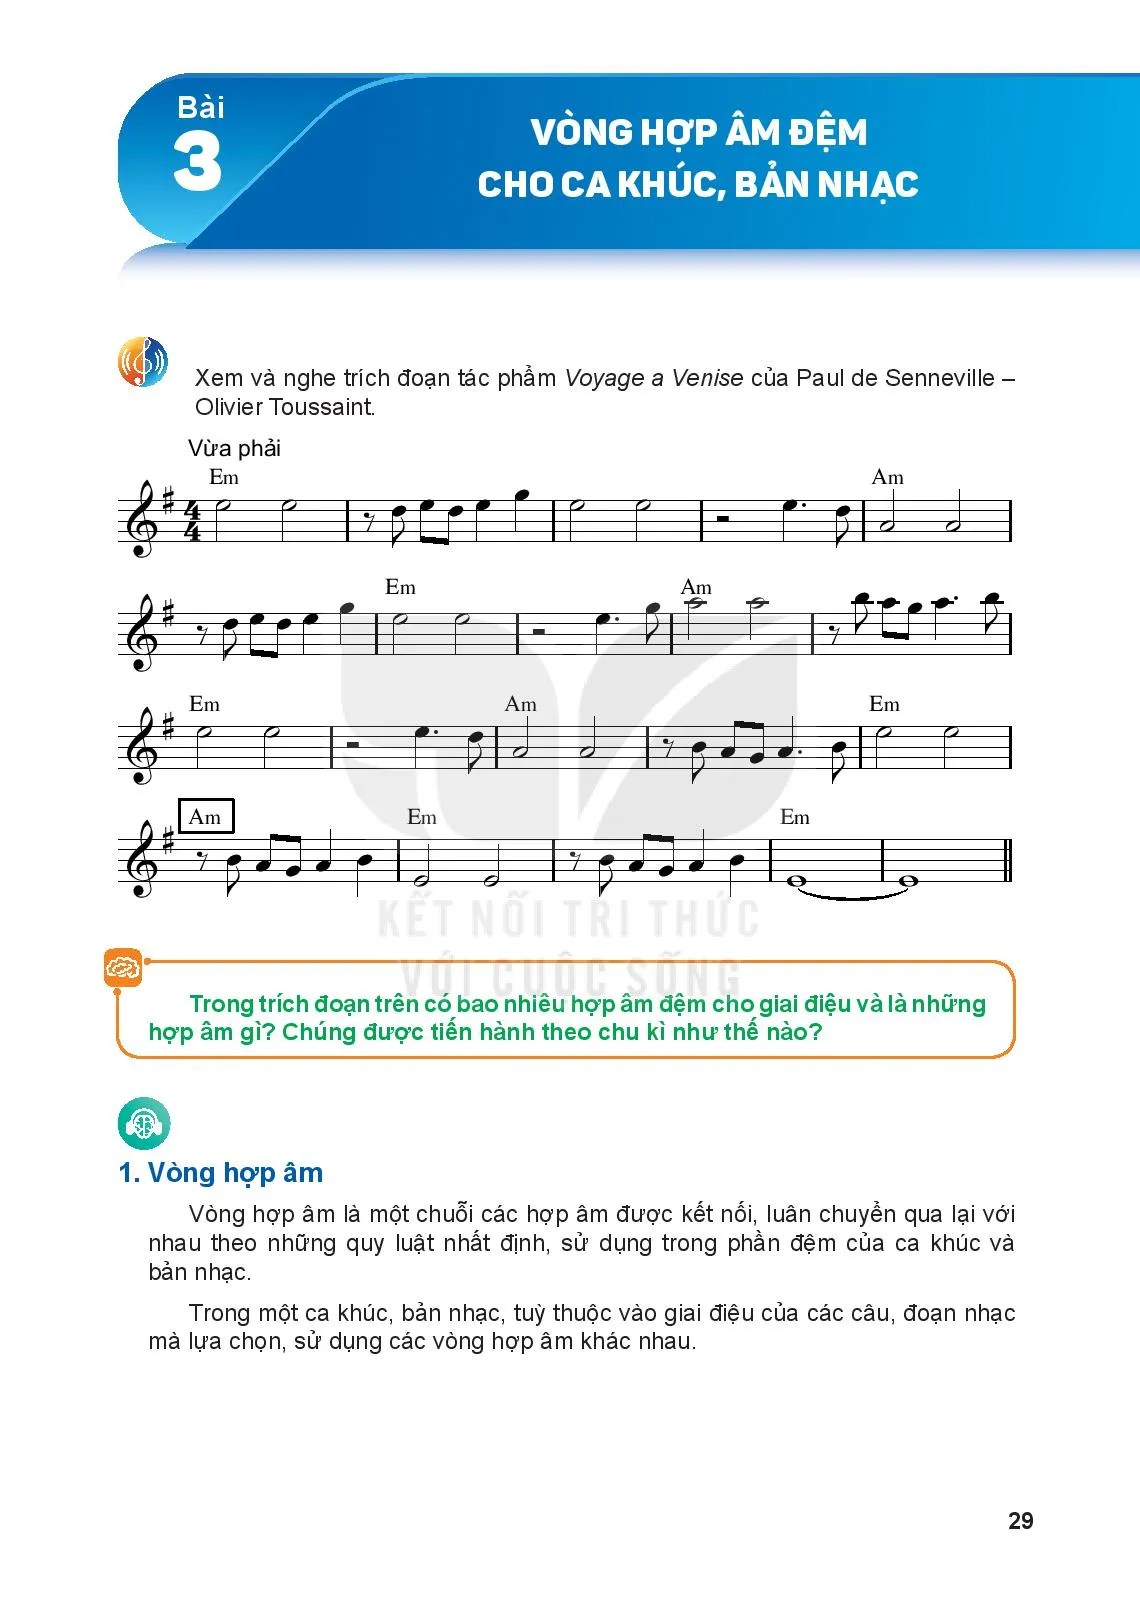 Bài 2: Phương pháp xác định cấu trúc của ca khúc, bản nhạc 